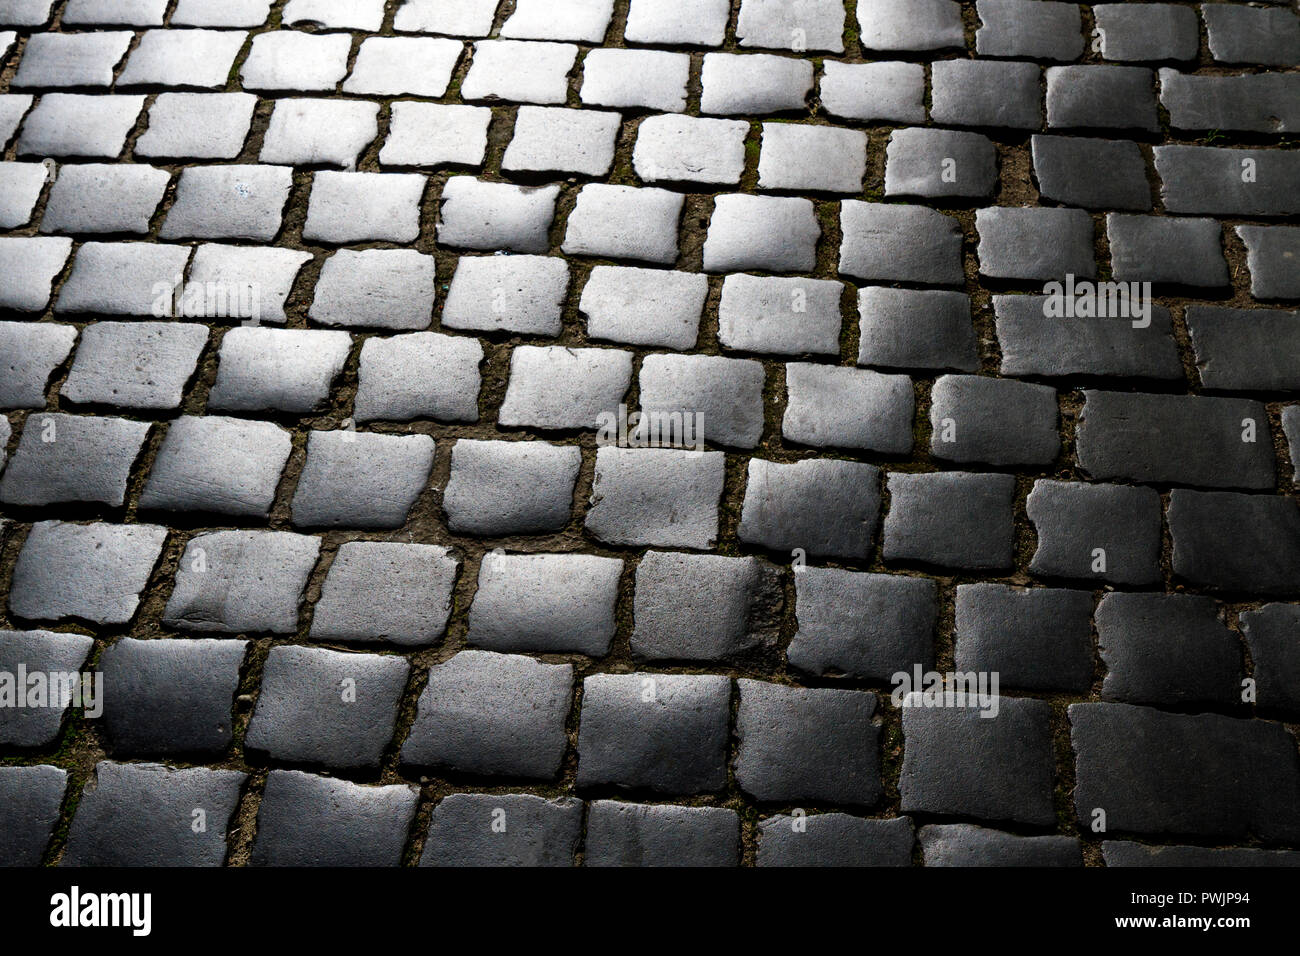 cobblestone square in gradient colors Stock Photo Alamy